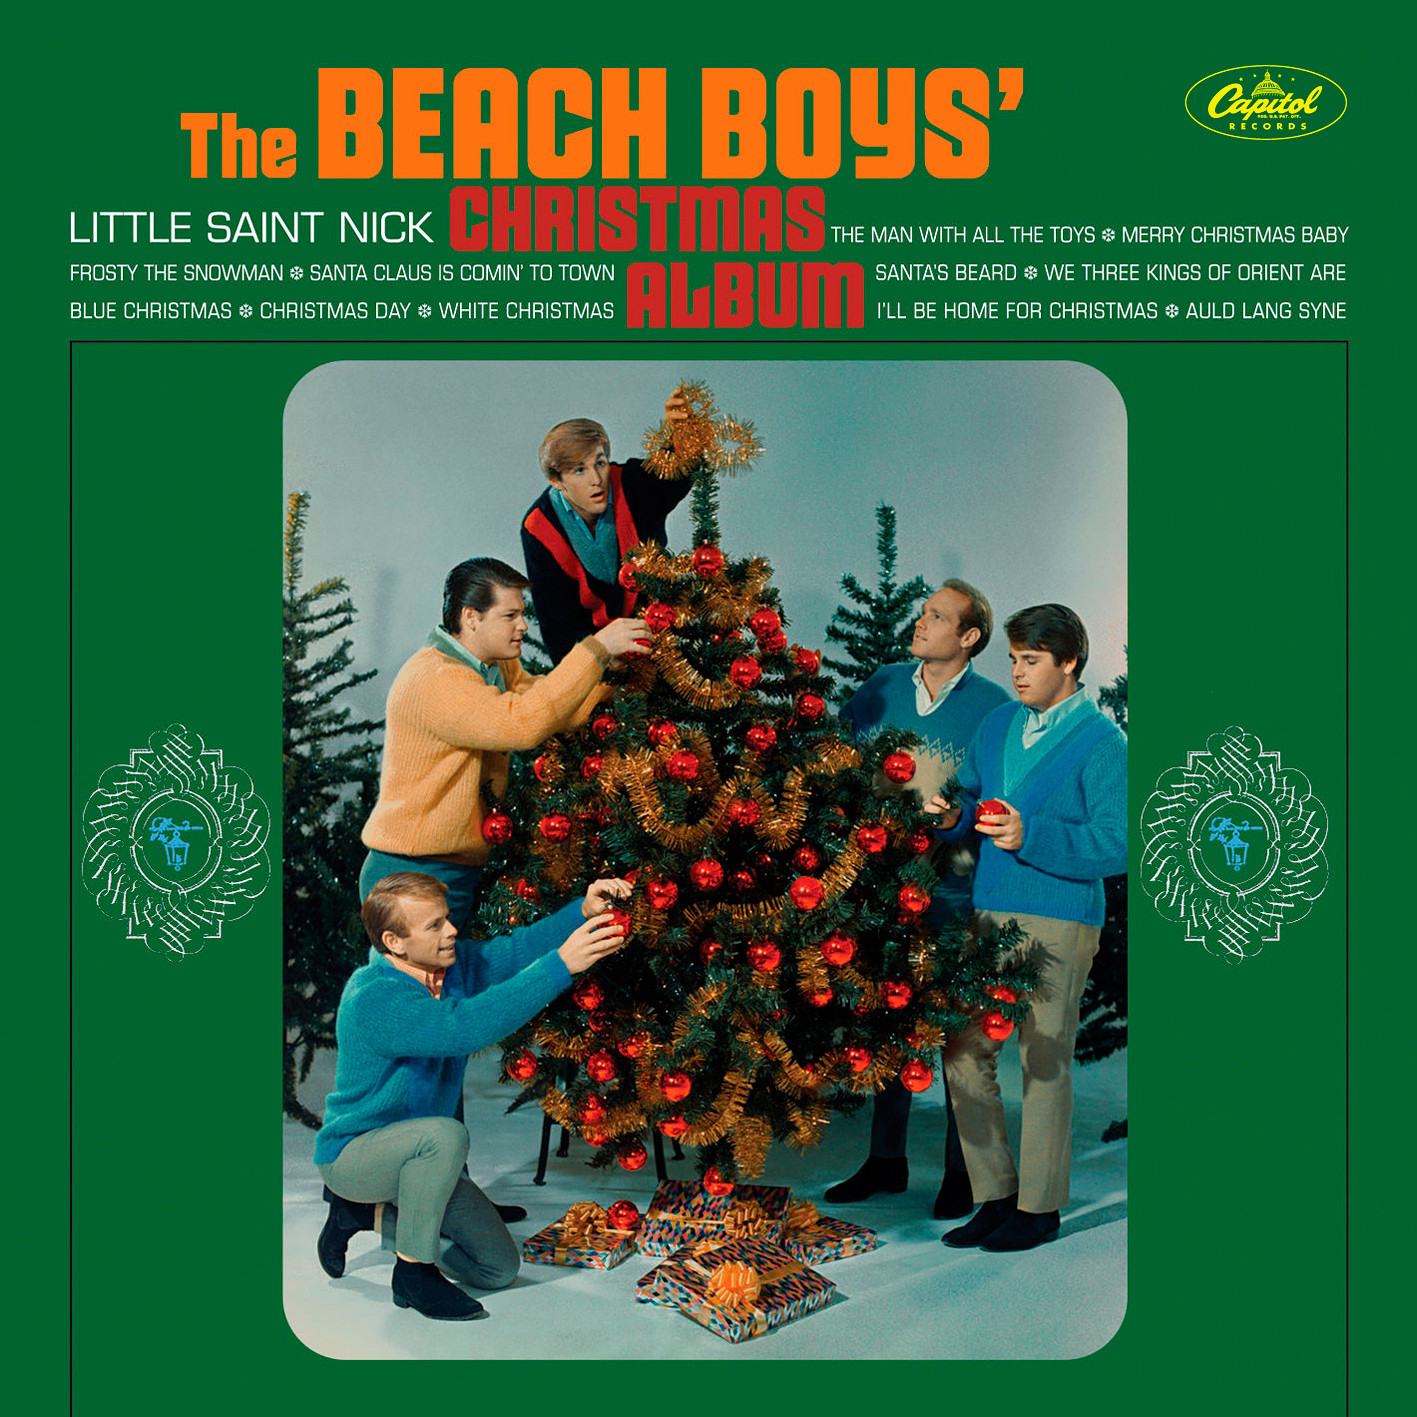 The Beach Boys – Christmas Album (1964/2015) [HDTracks FLAC 24bit/192kHz]